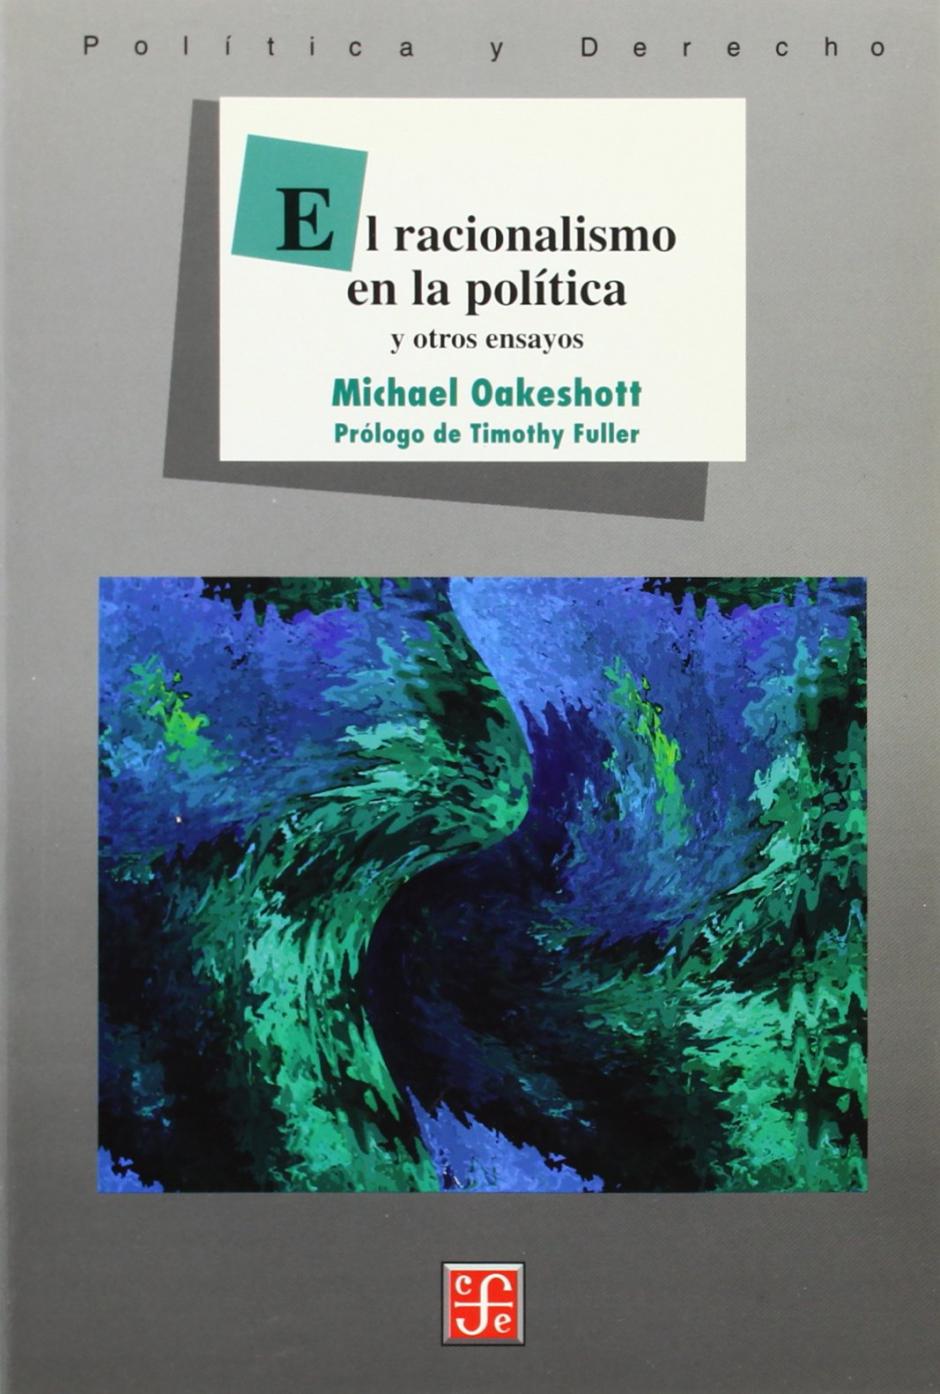 El racionalismo en la política de Michael Oakeshott